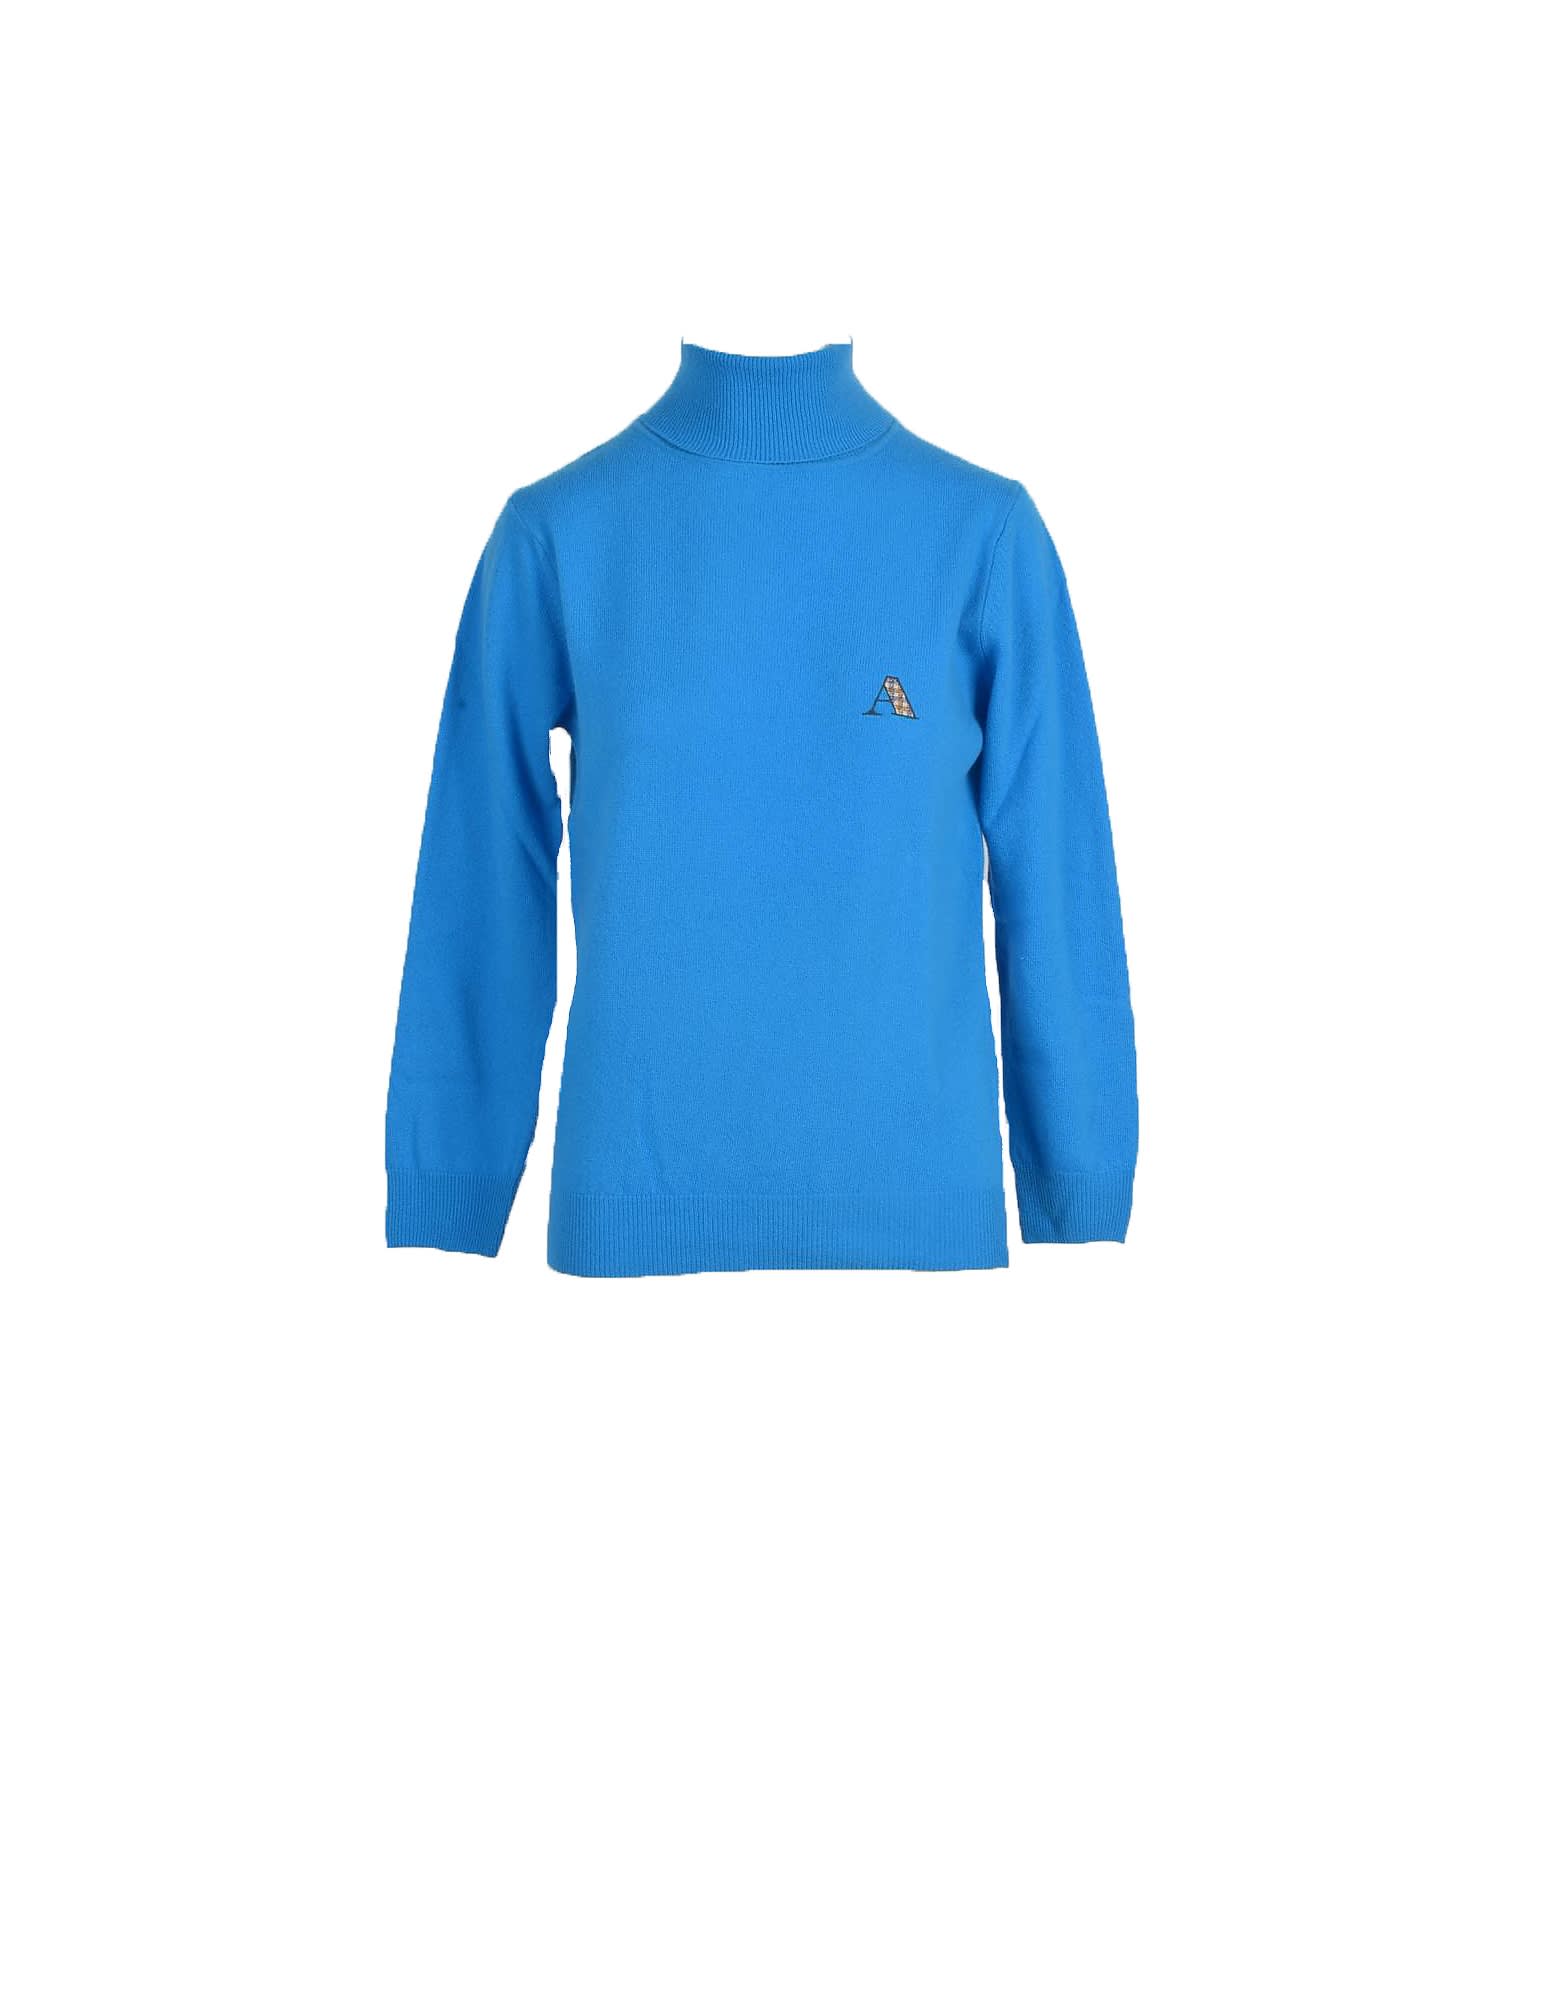 Aquascutum Womens Bluette Sweater